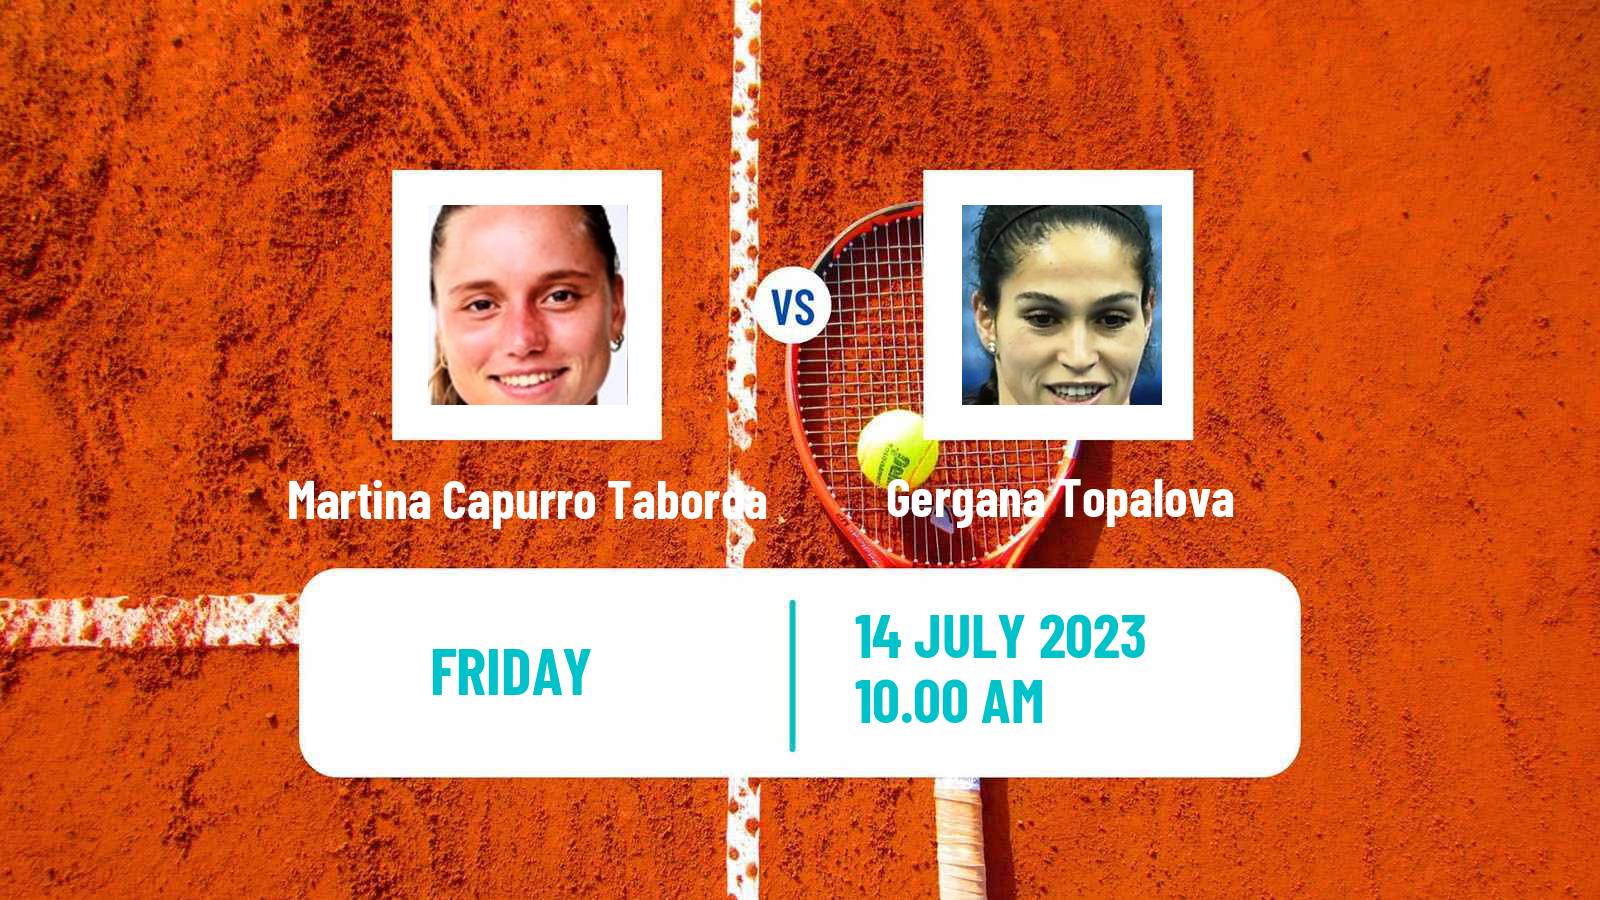 Tennis ITF W25 Punta Cana 2 Women Martina Capurro Taborda - Gergana Topalova